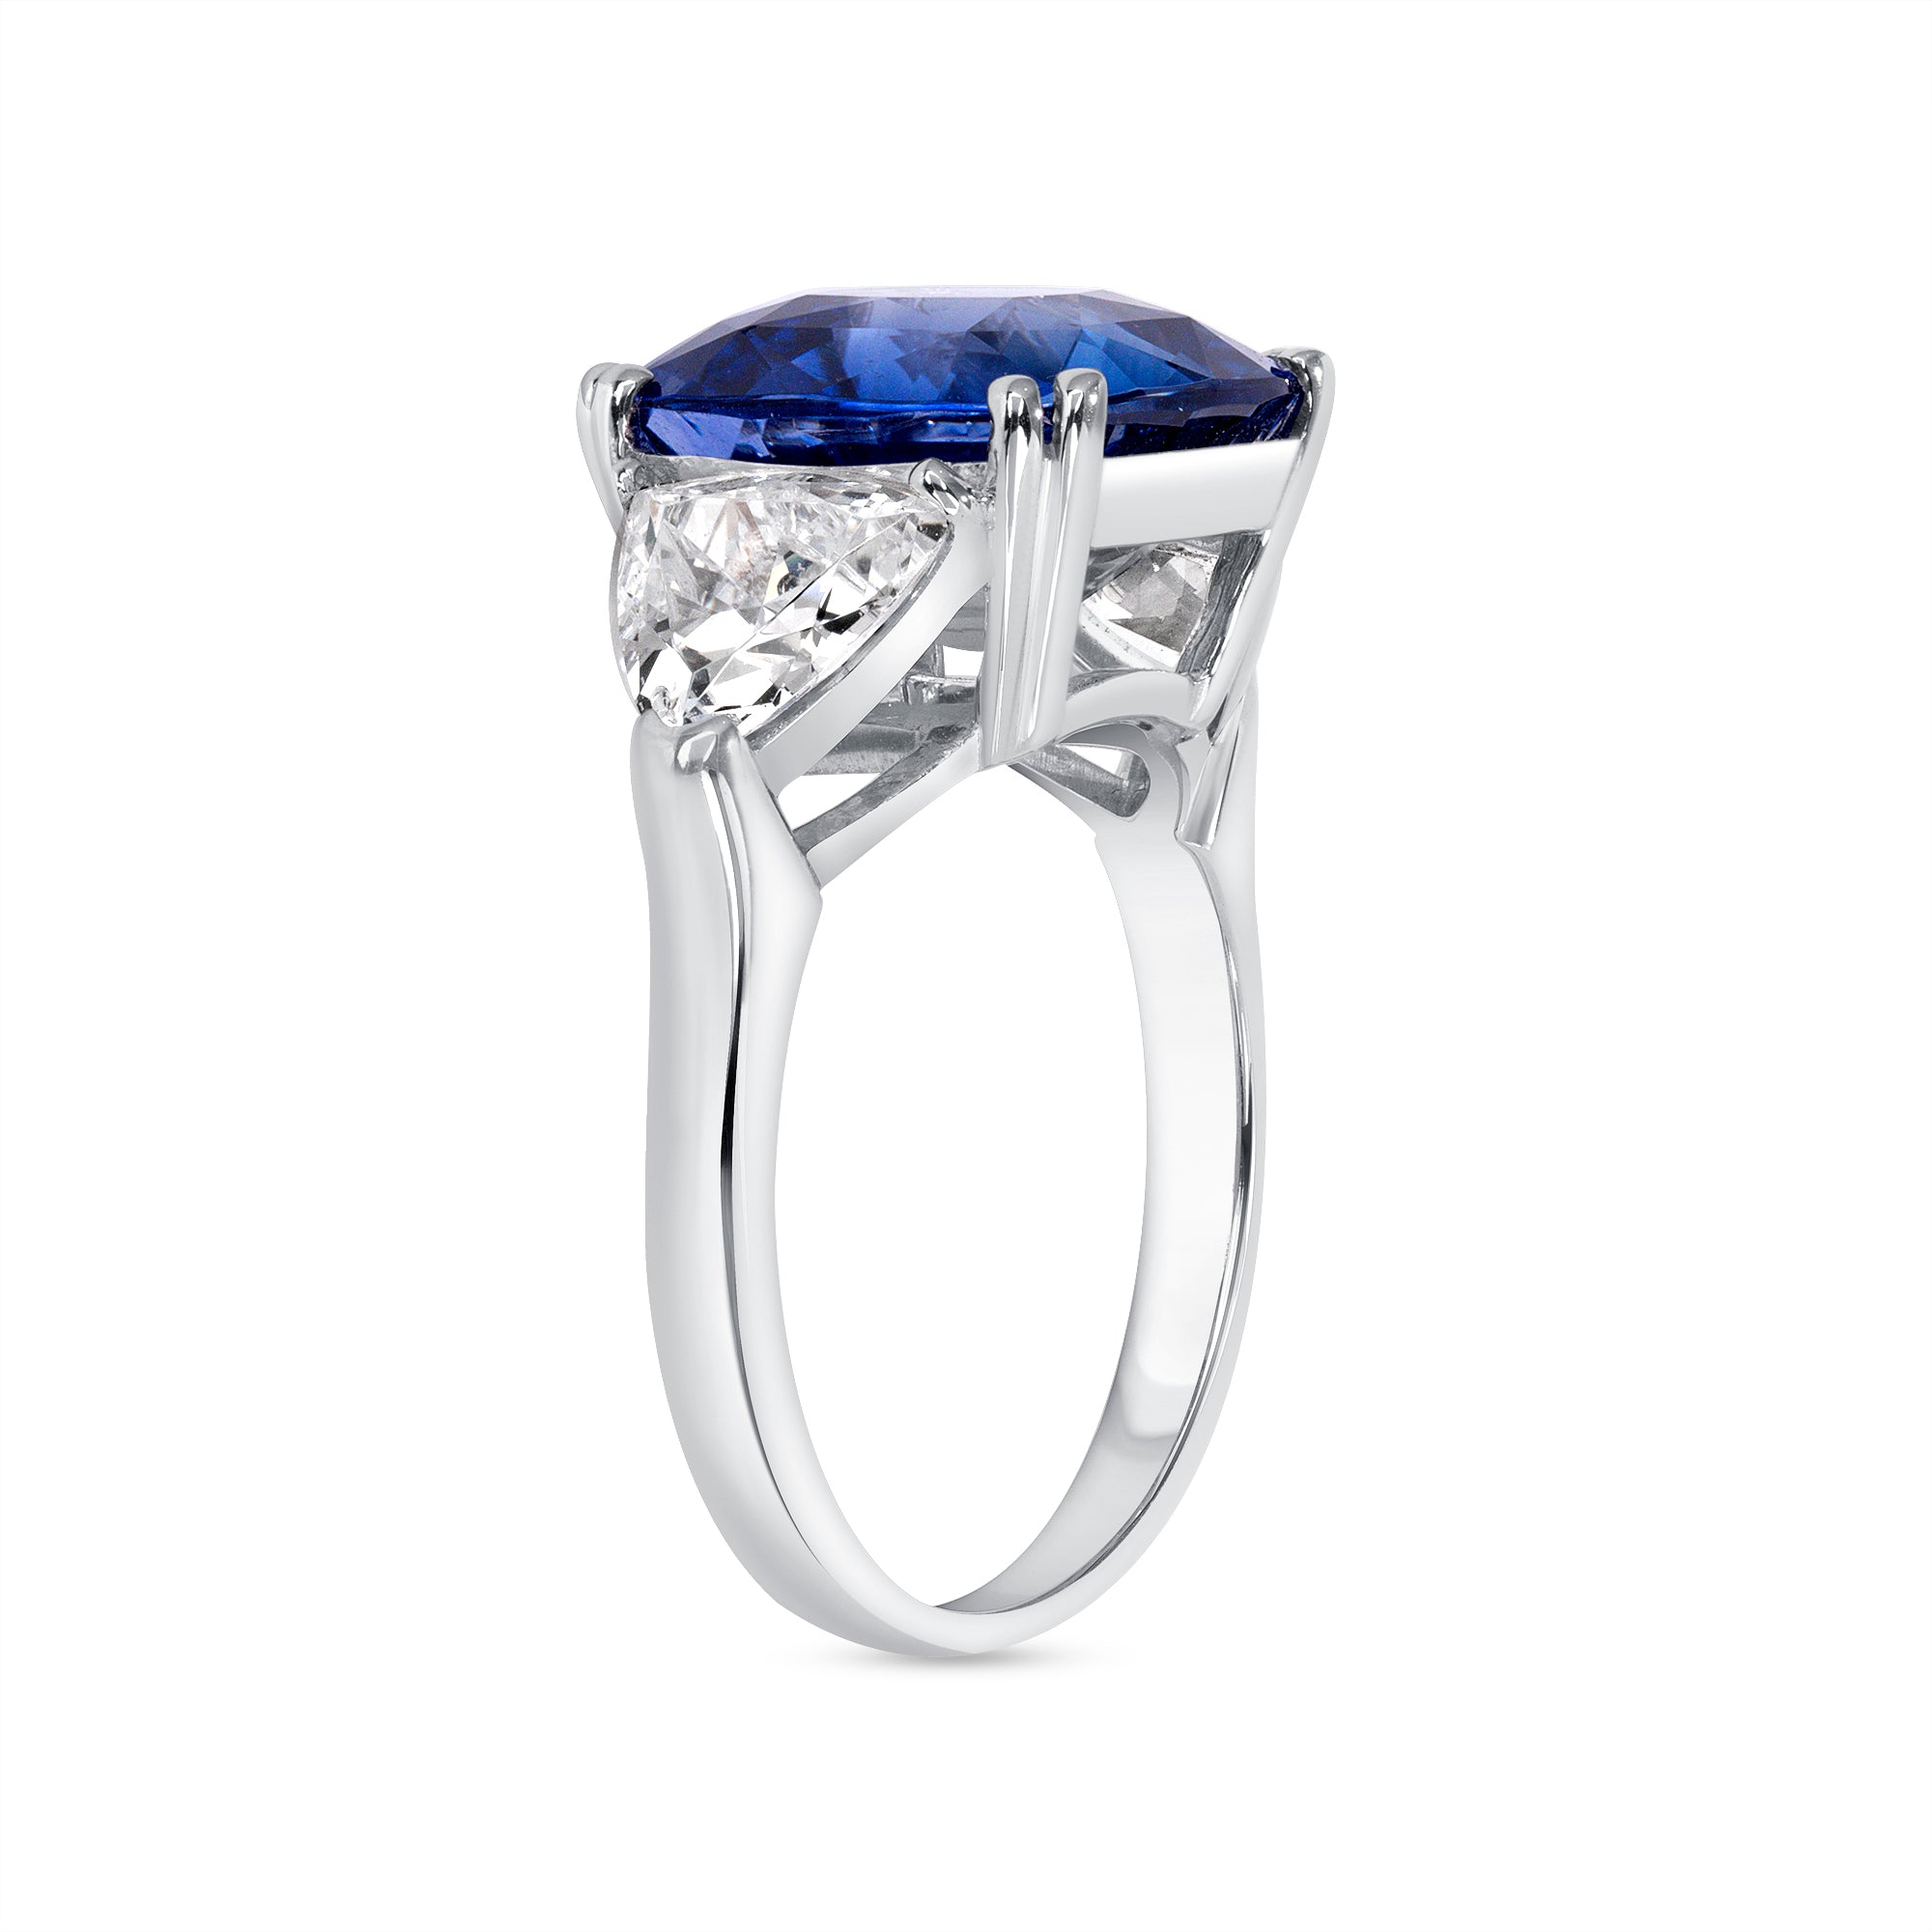 Cushion Cut Blue Sapphire and Trillion Cut Diamond Three Stone Ring